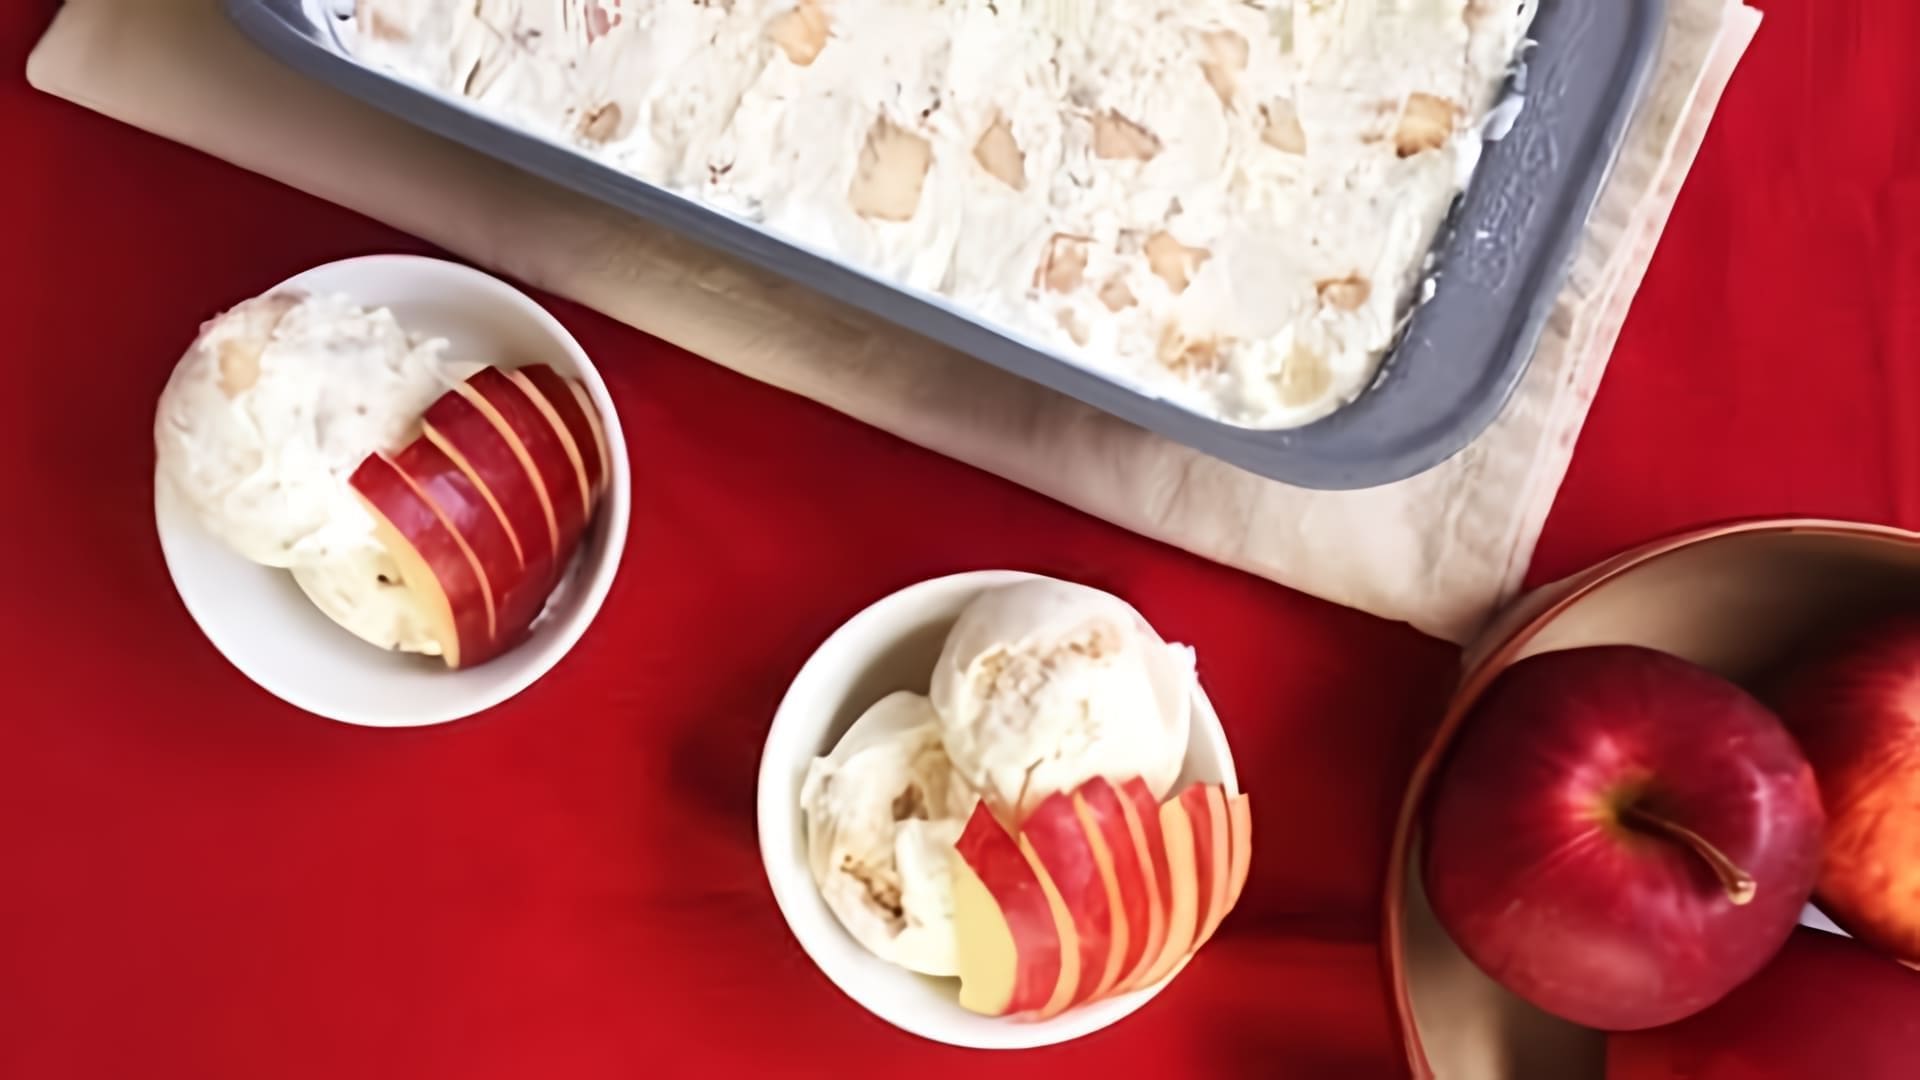 В этом видео показан простой рецепт приготовления яблочного мороженого в домашних условиях